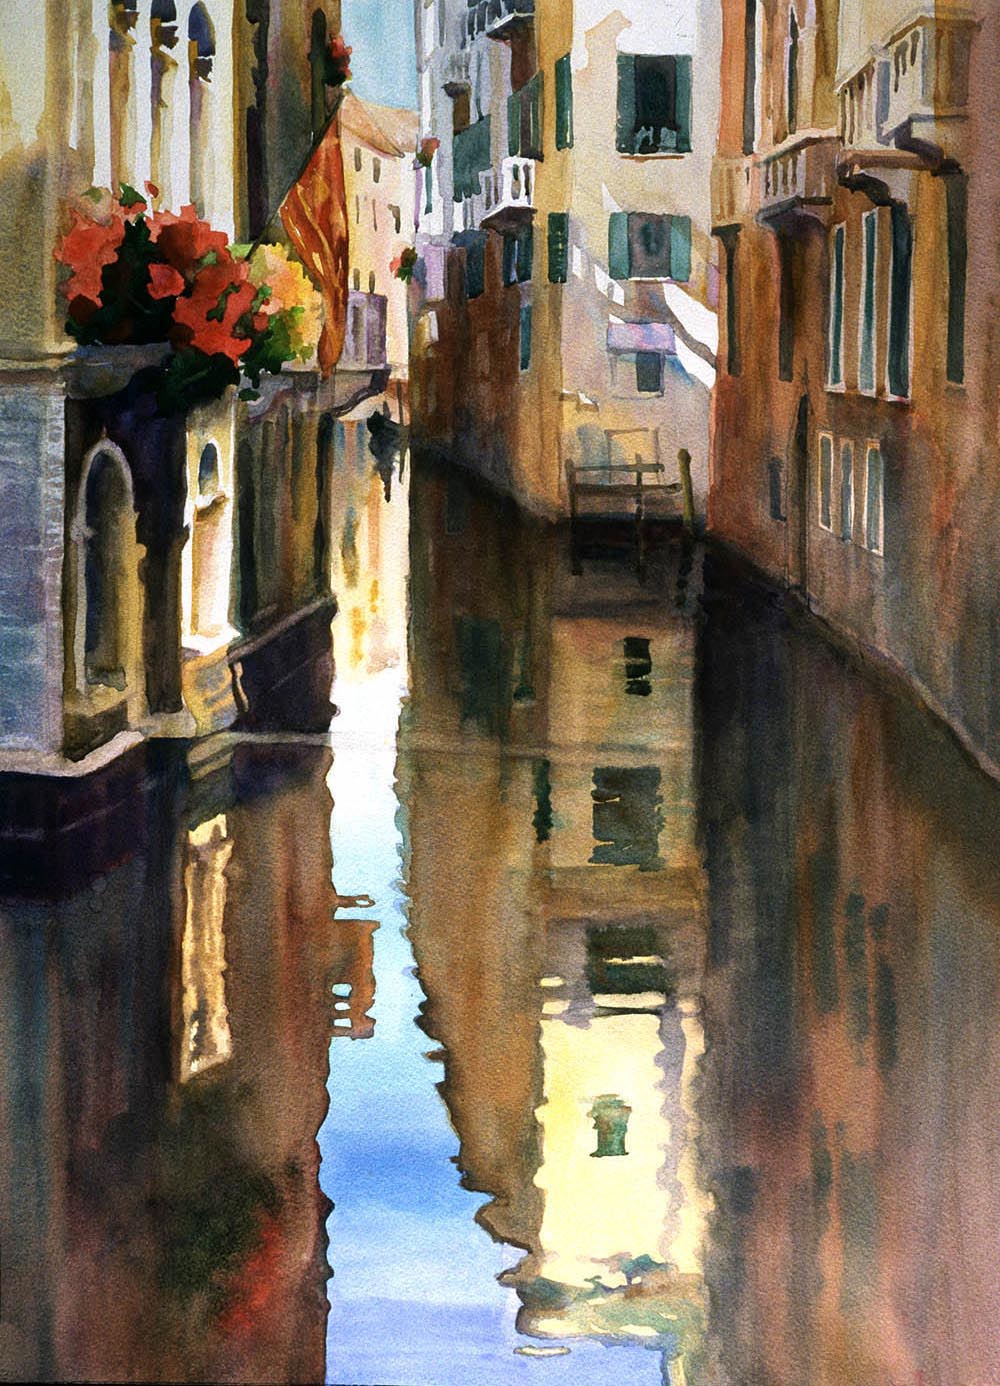 Rio Menuo de la Verona, Venice